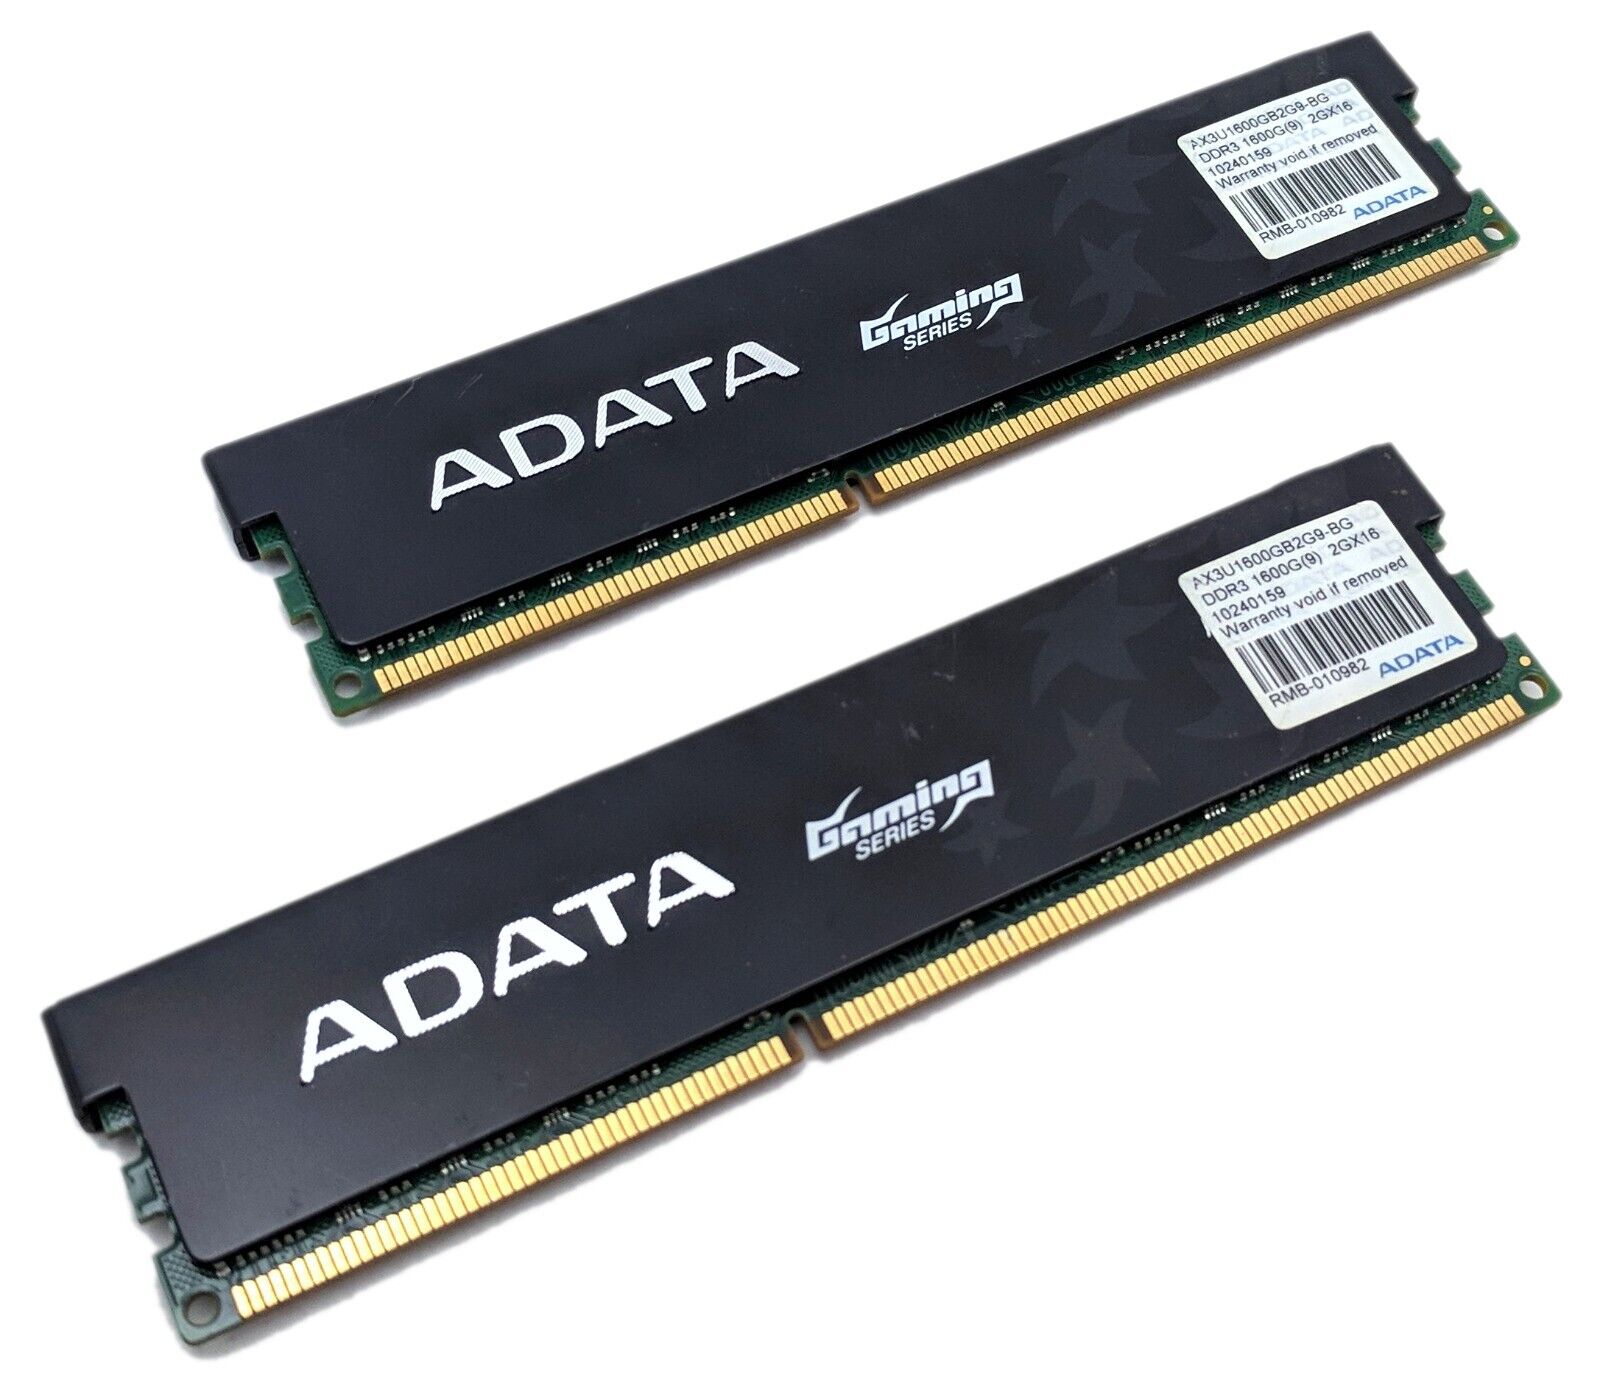 ADATA Gaming Series 4GB Kit (2x2GB) DDR3 1600 MHz PC3-12800 RAM AX3U1600GB2G9-2G